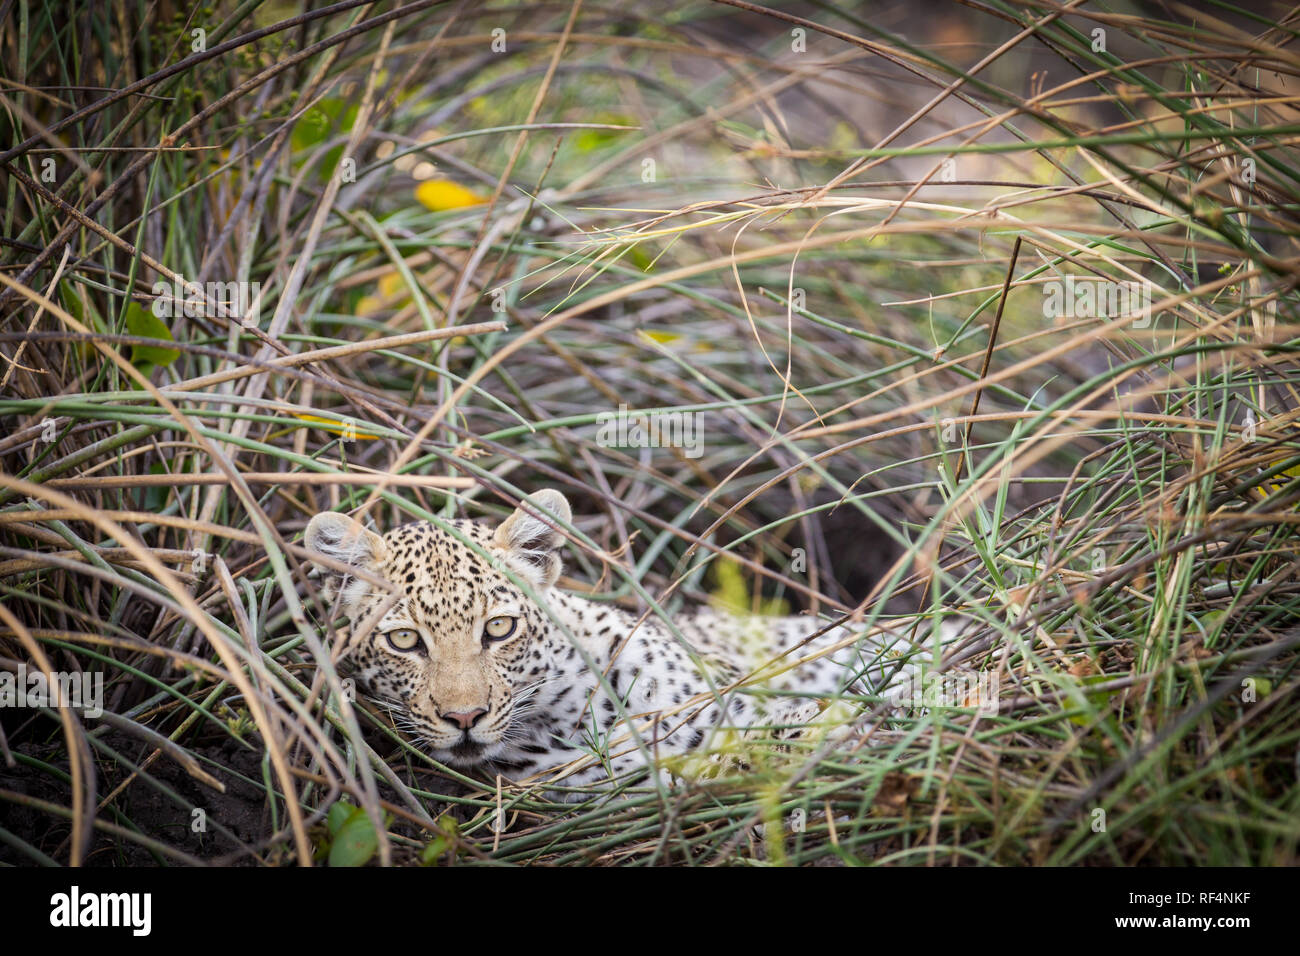 Viele Bereiche des Okavango Delta, North West District, Botswana sind berühmt für den häufigen Gelegenheiten Raubkatzen wie Leoparden zu sehen, Panther pardus Stockfoto